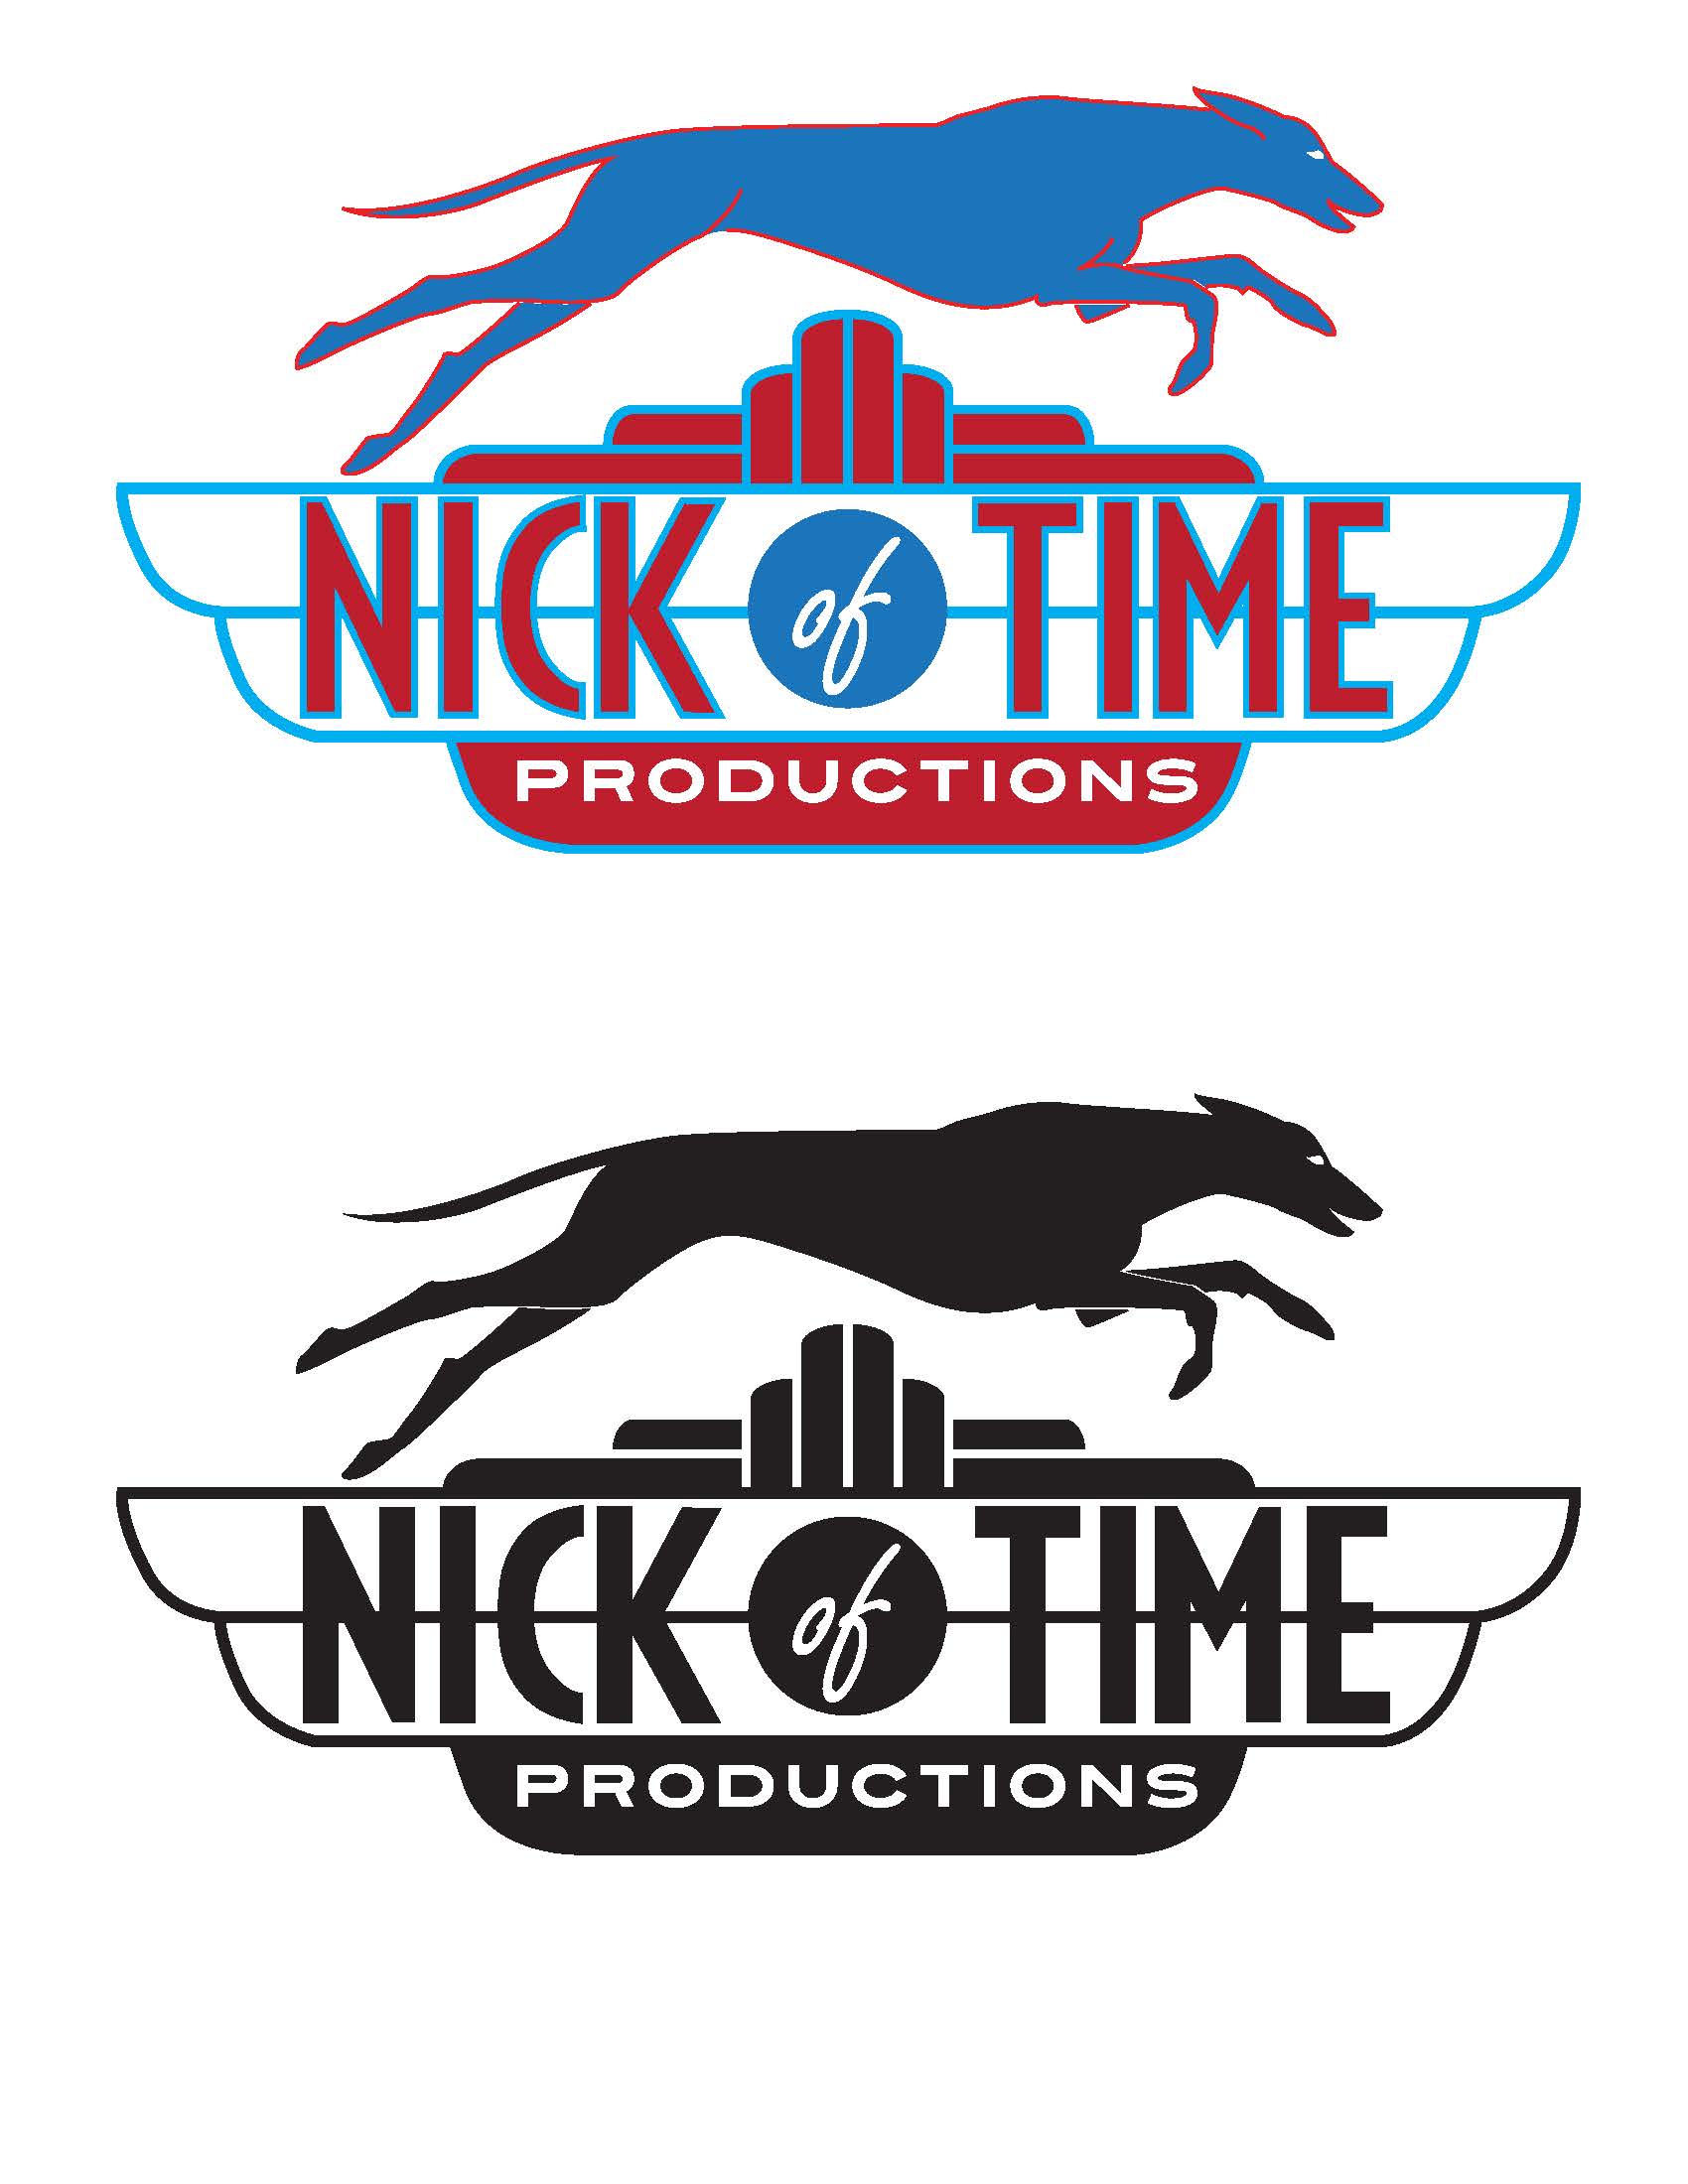 Nick-of-time_logo